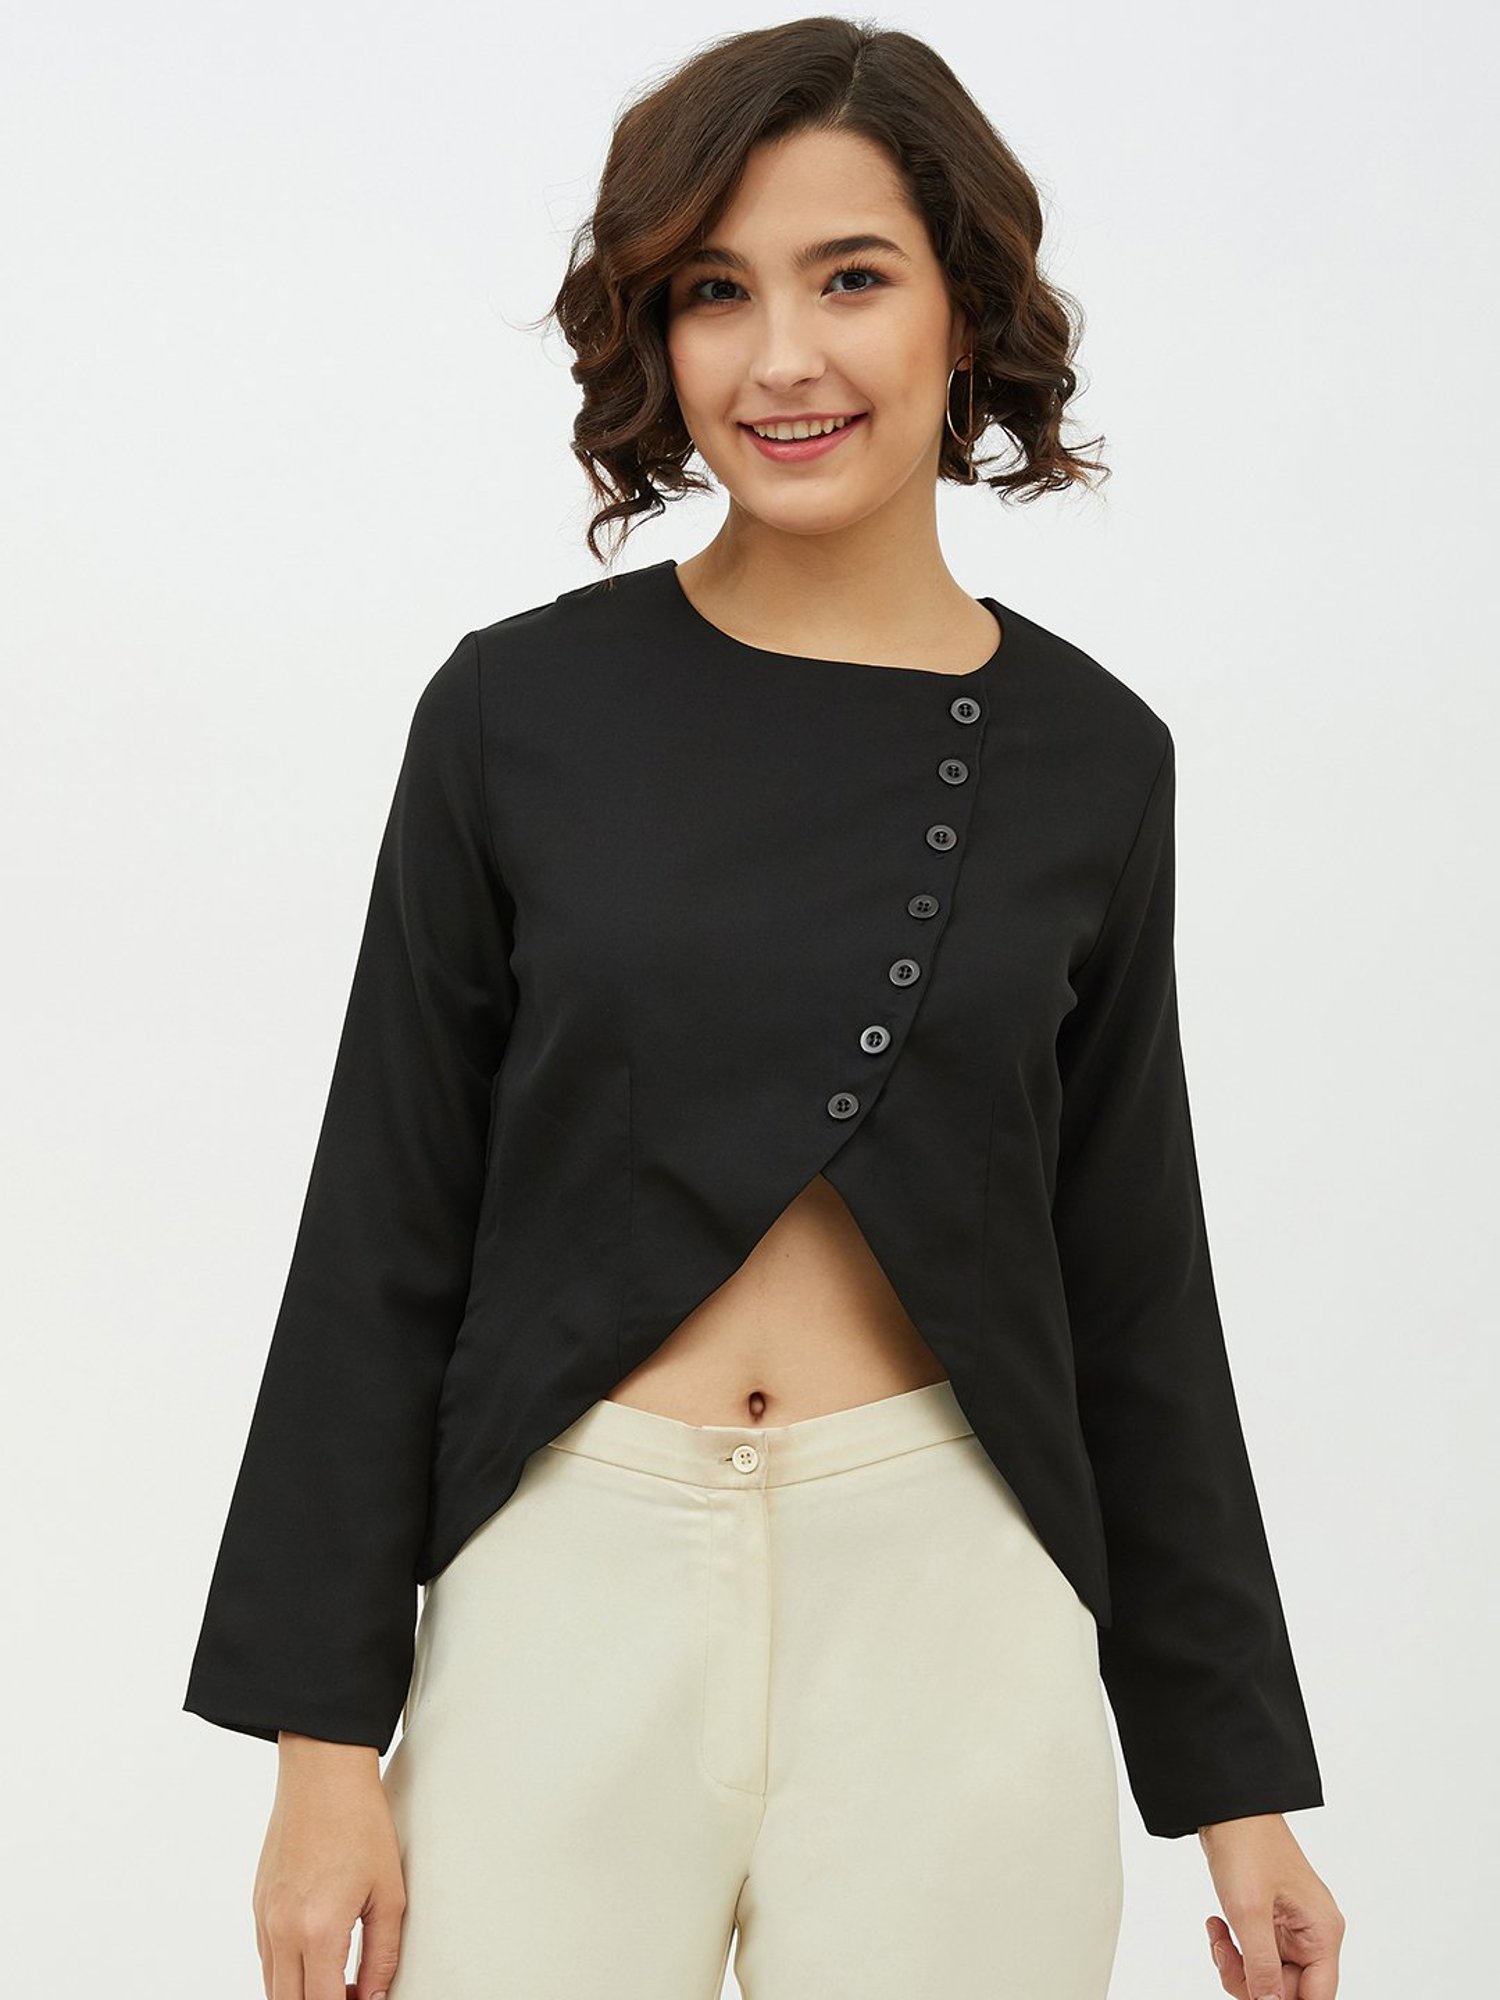 Women's Short Sleeve Belly Cut Out Crop Top- Black – Stylestone